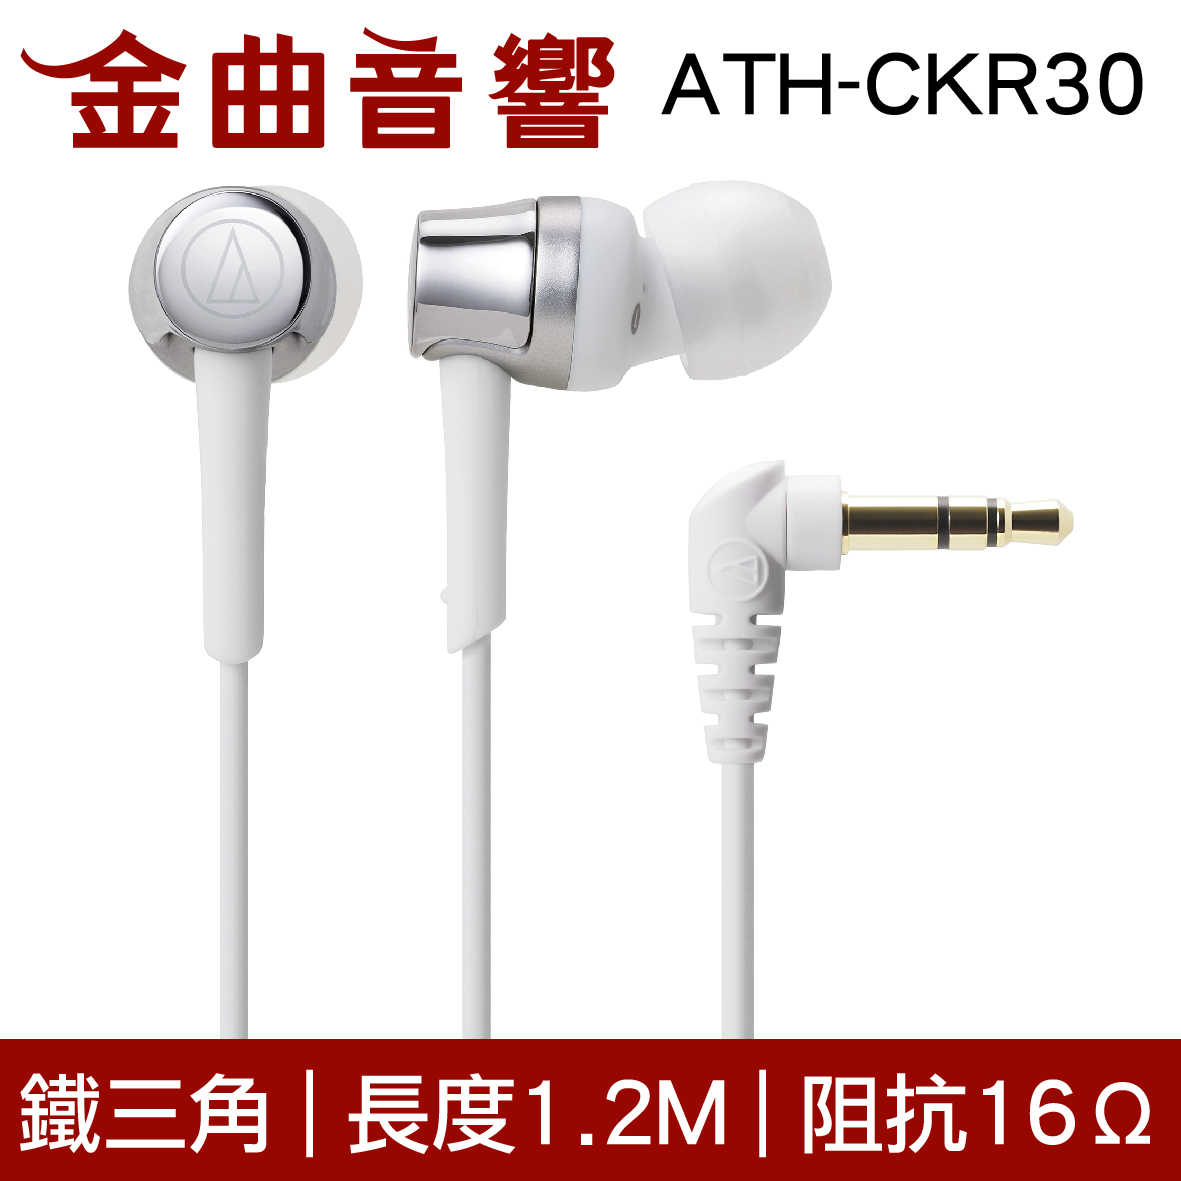 鐵三角 ATH-CKR30 銀色 無麥克風 耳道式耳機 | 金曲音響